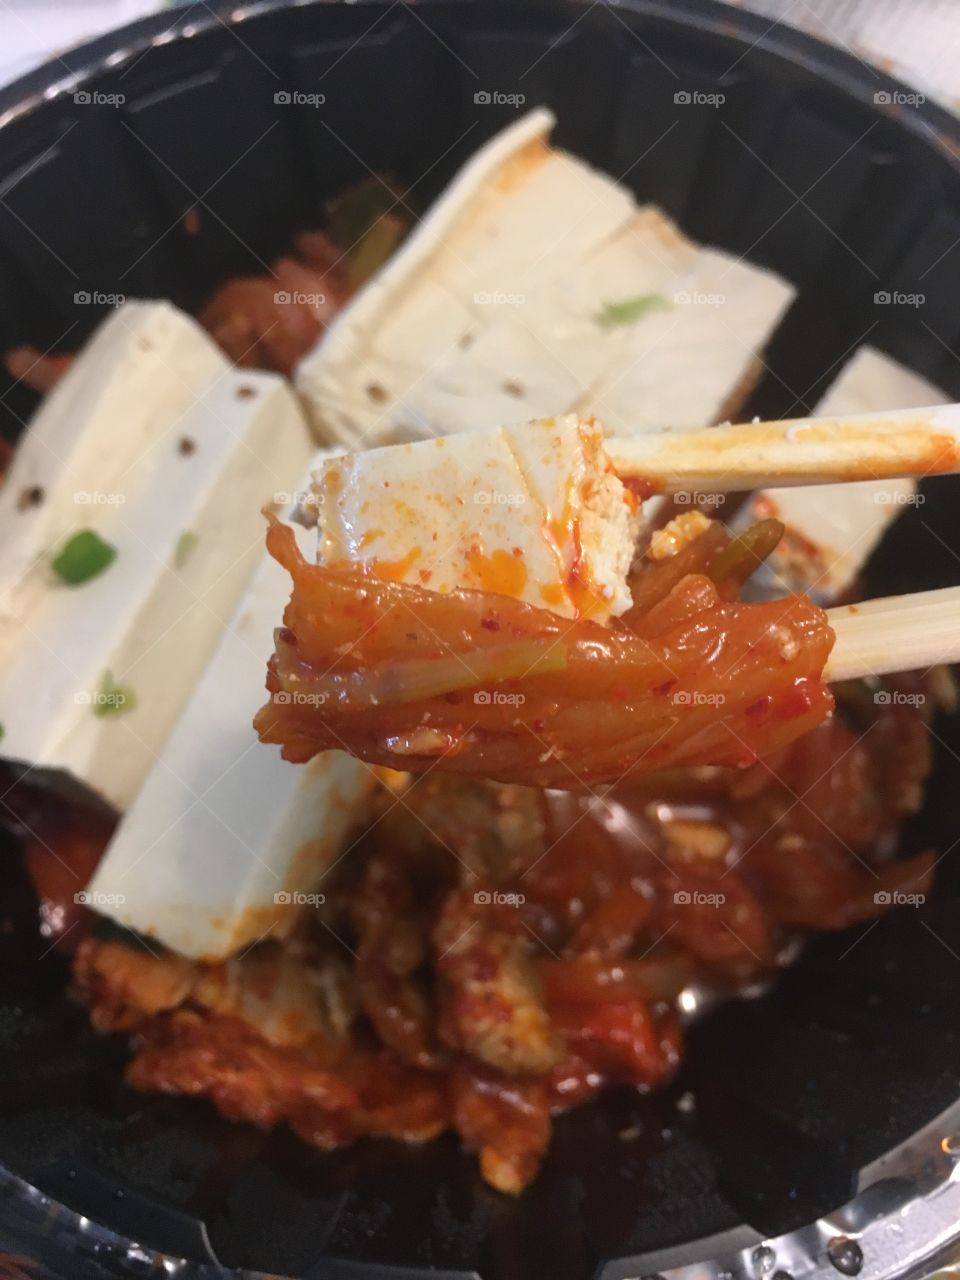 Tofu and kimchi